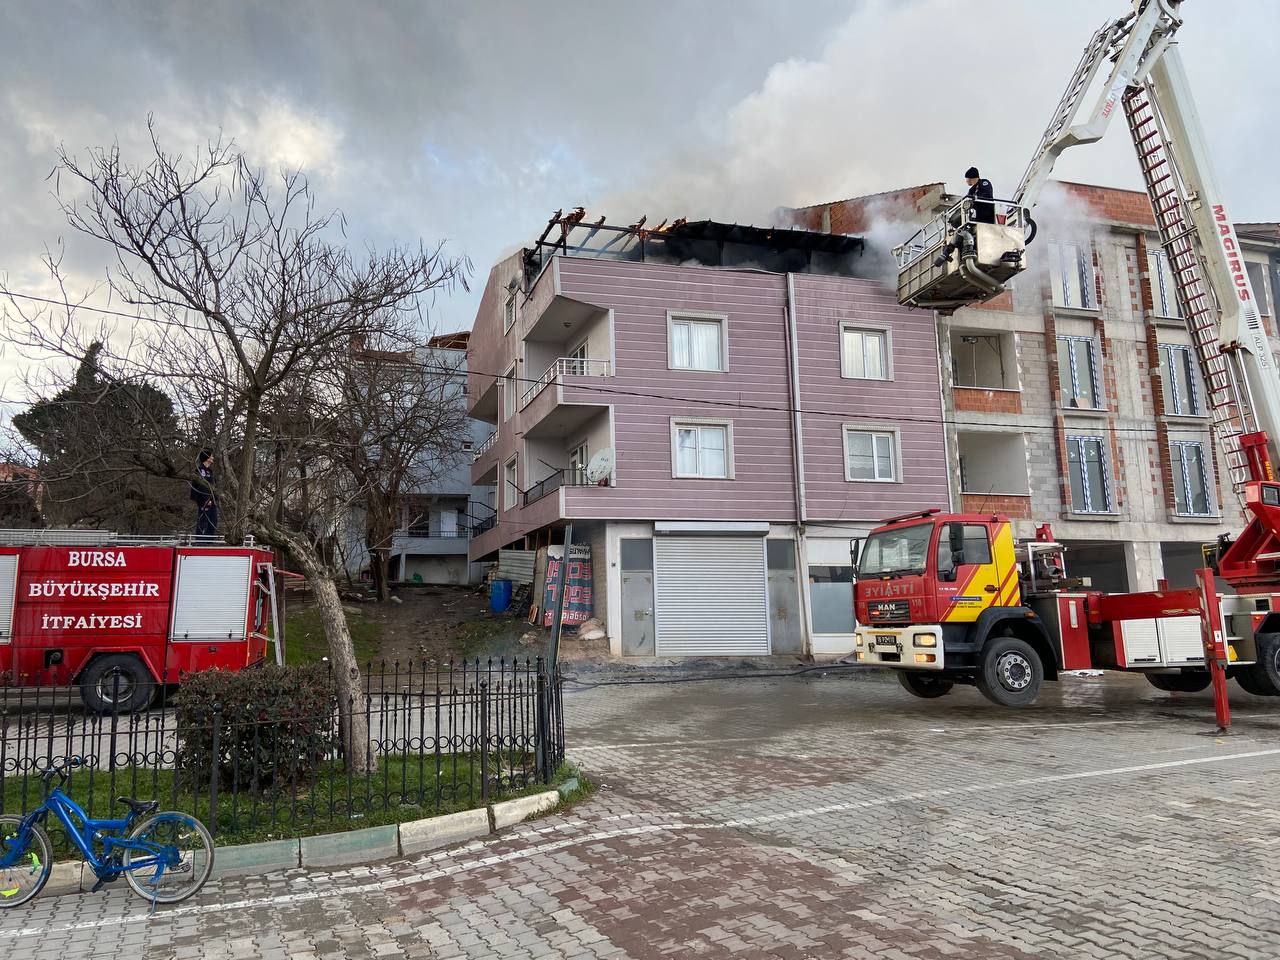 Bursa'da 3 katlı binanın çatı katında yangın